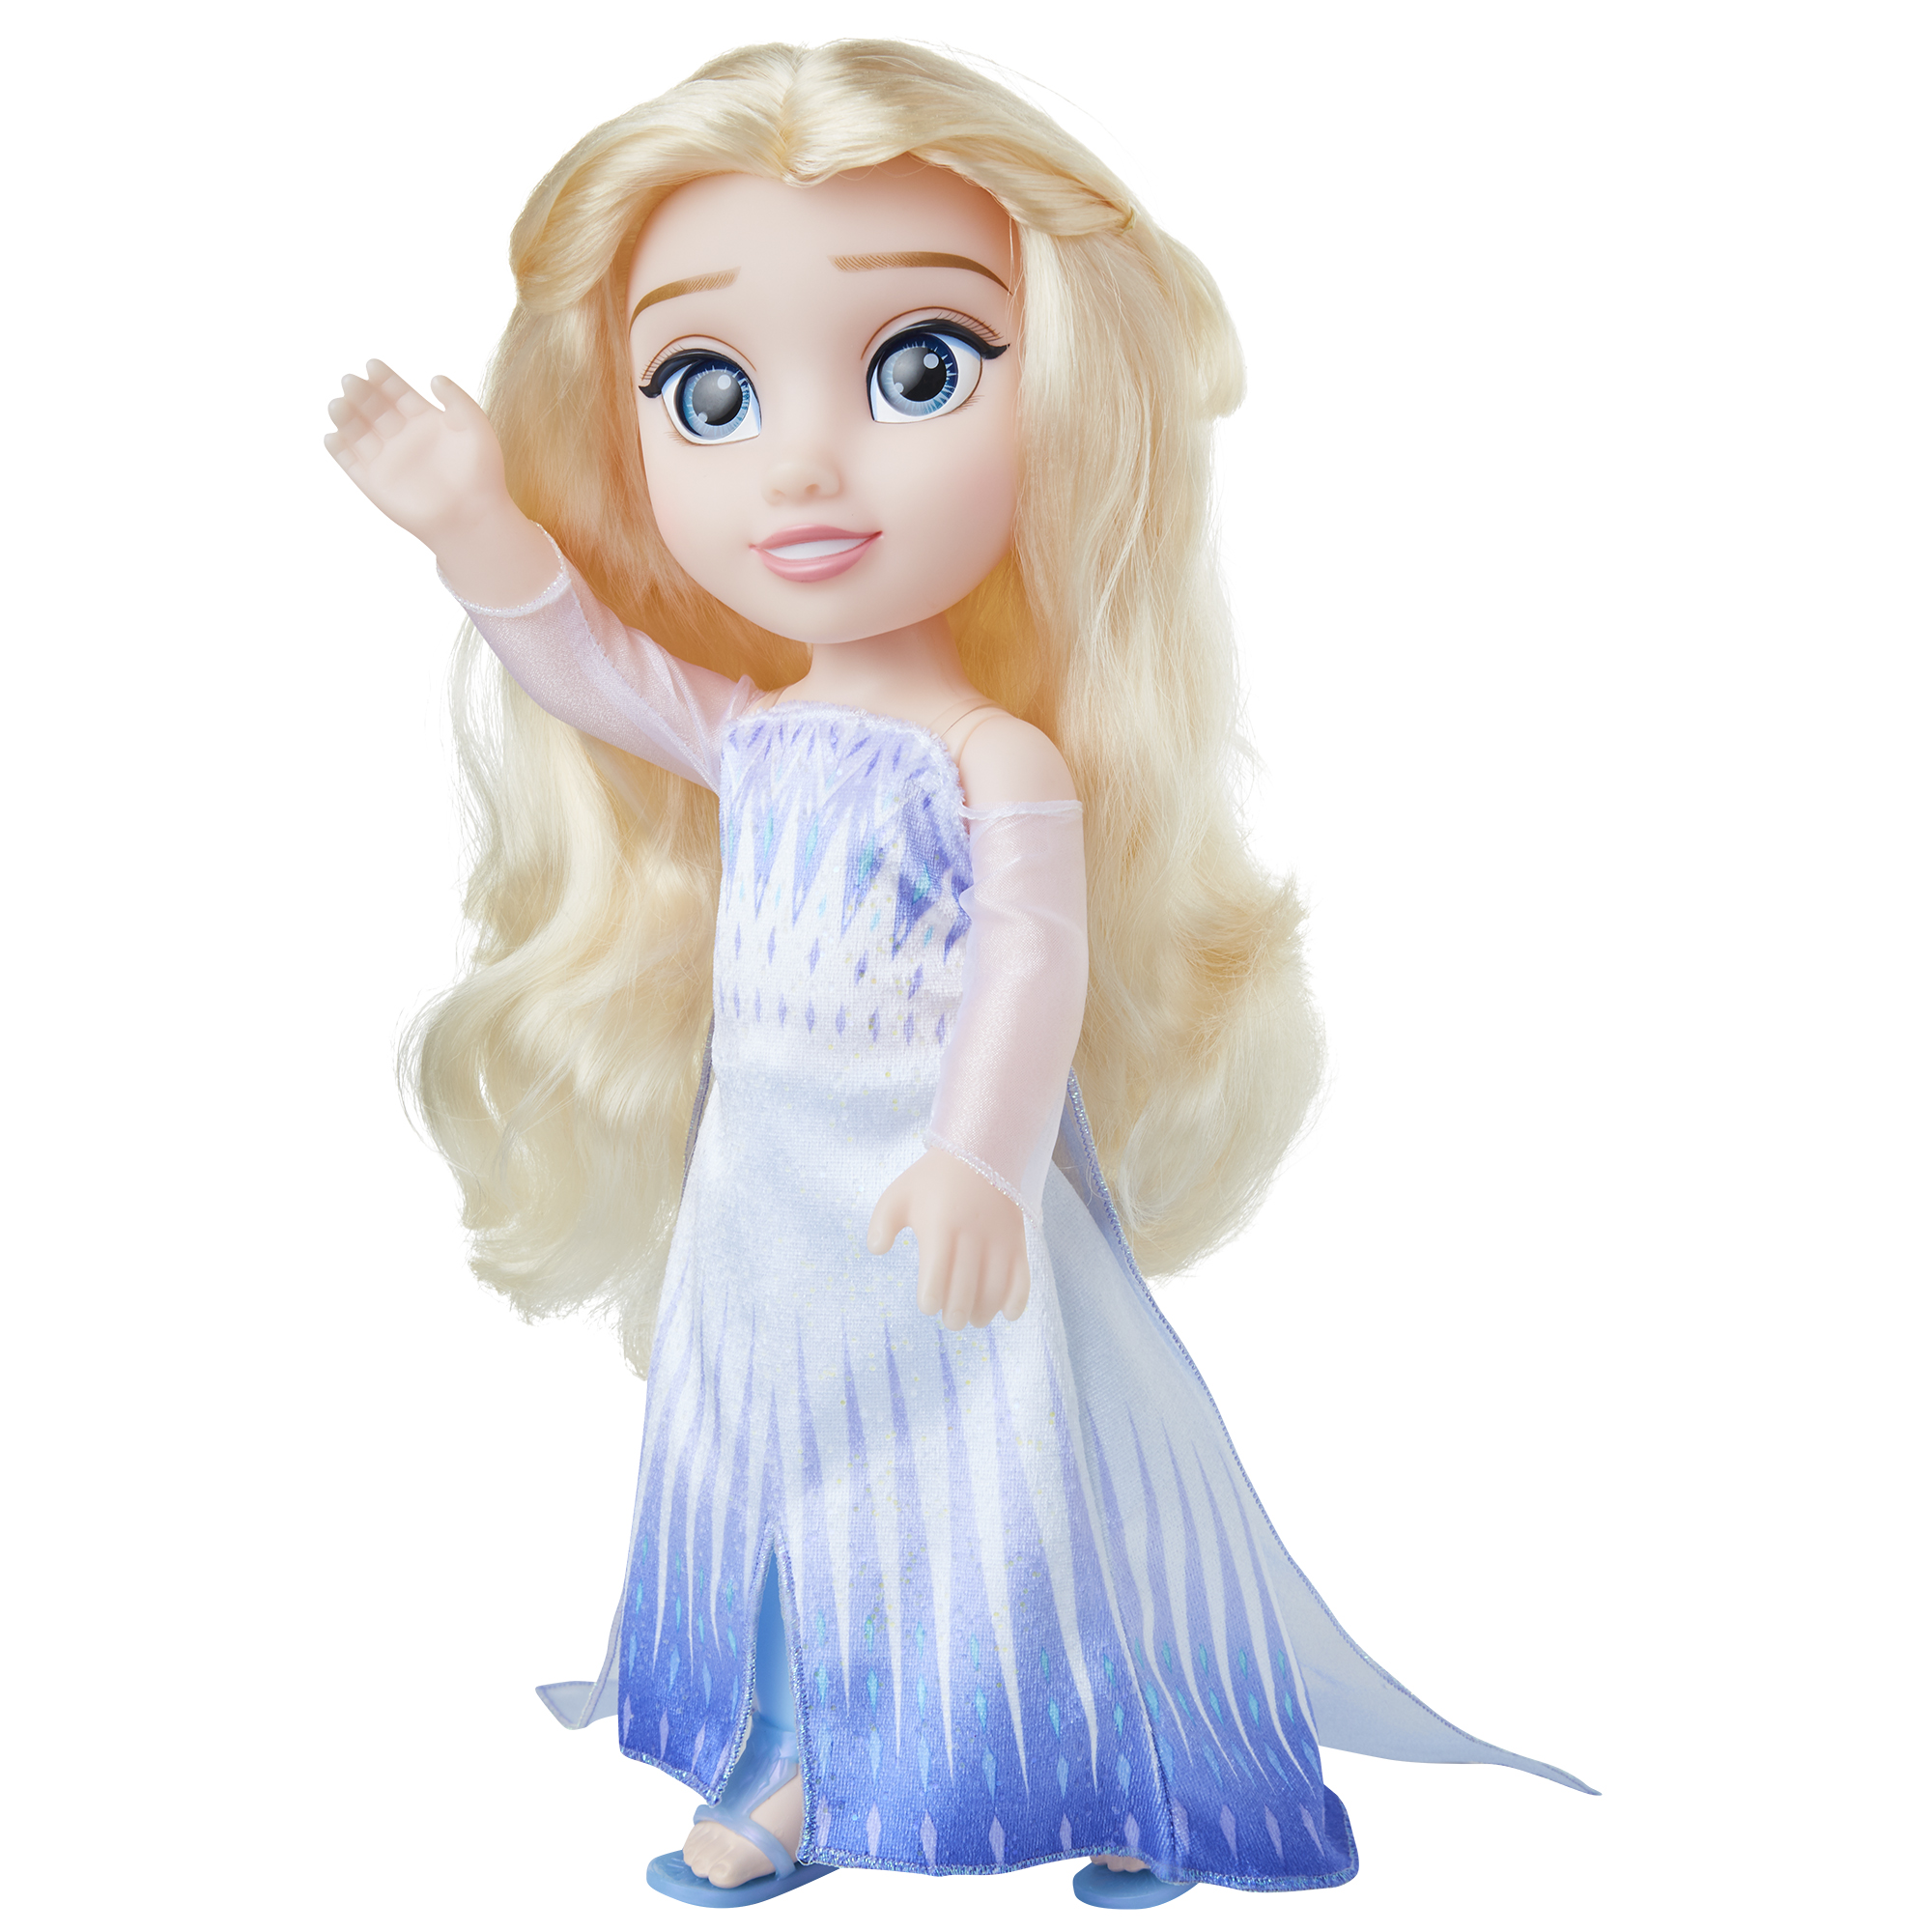 Disney Frozen 2 Elsa the Snow Queen 14" Doll - image 3 of 11